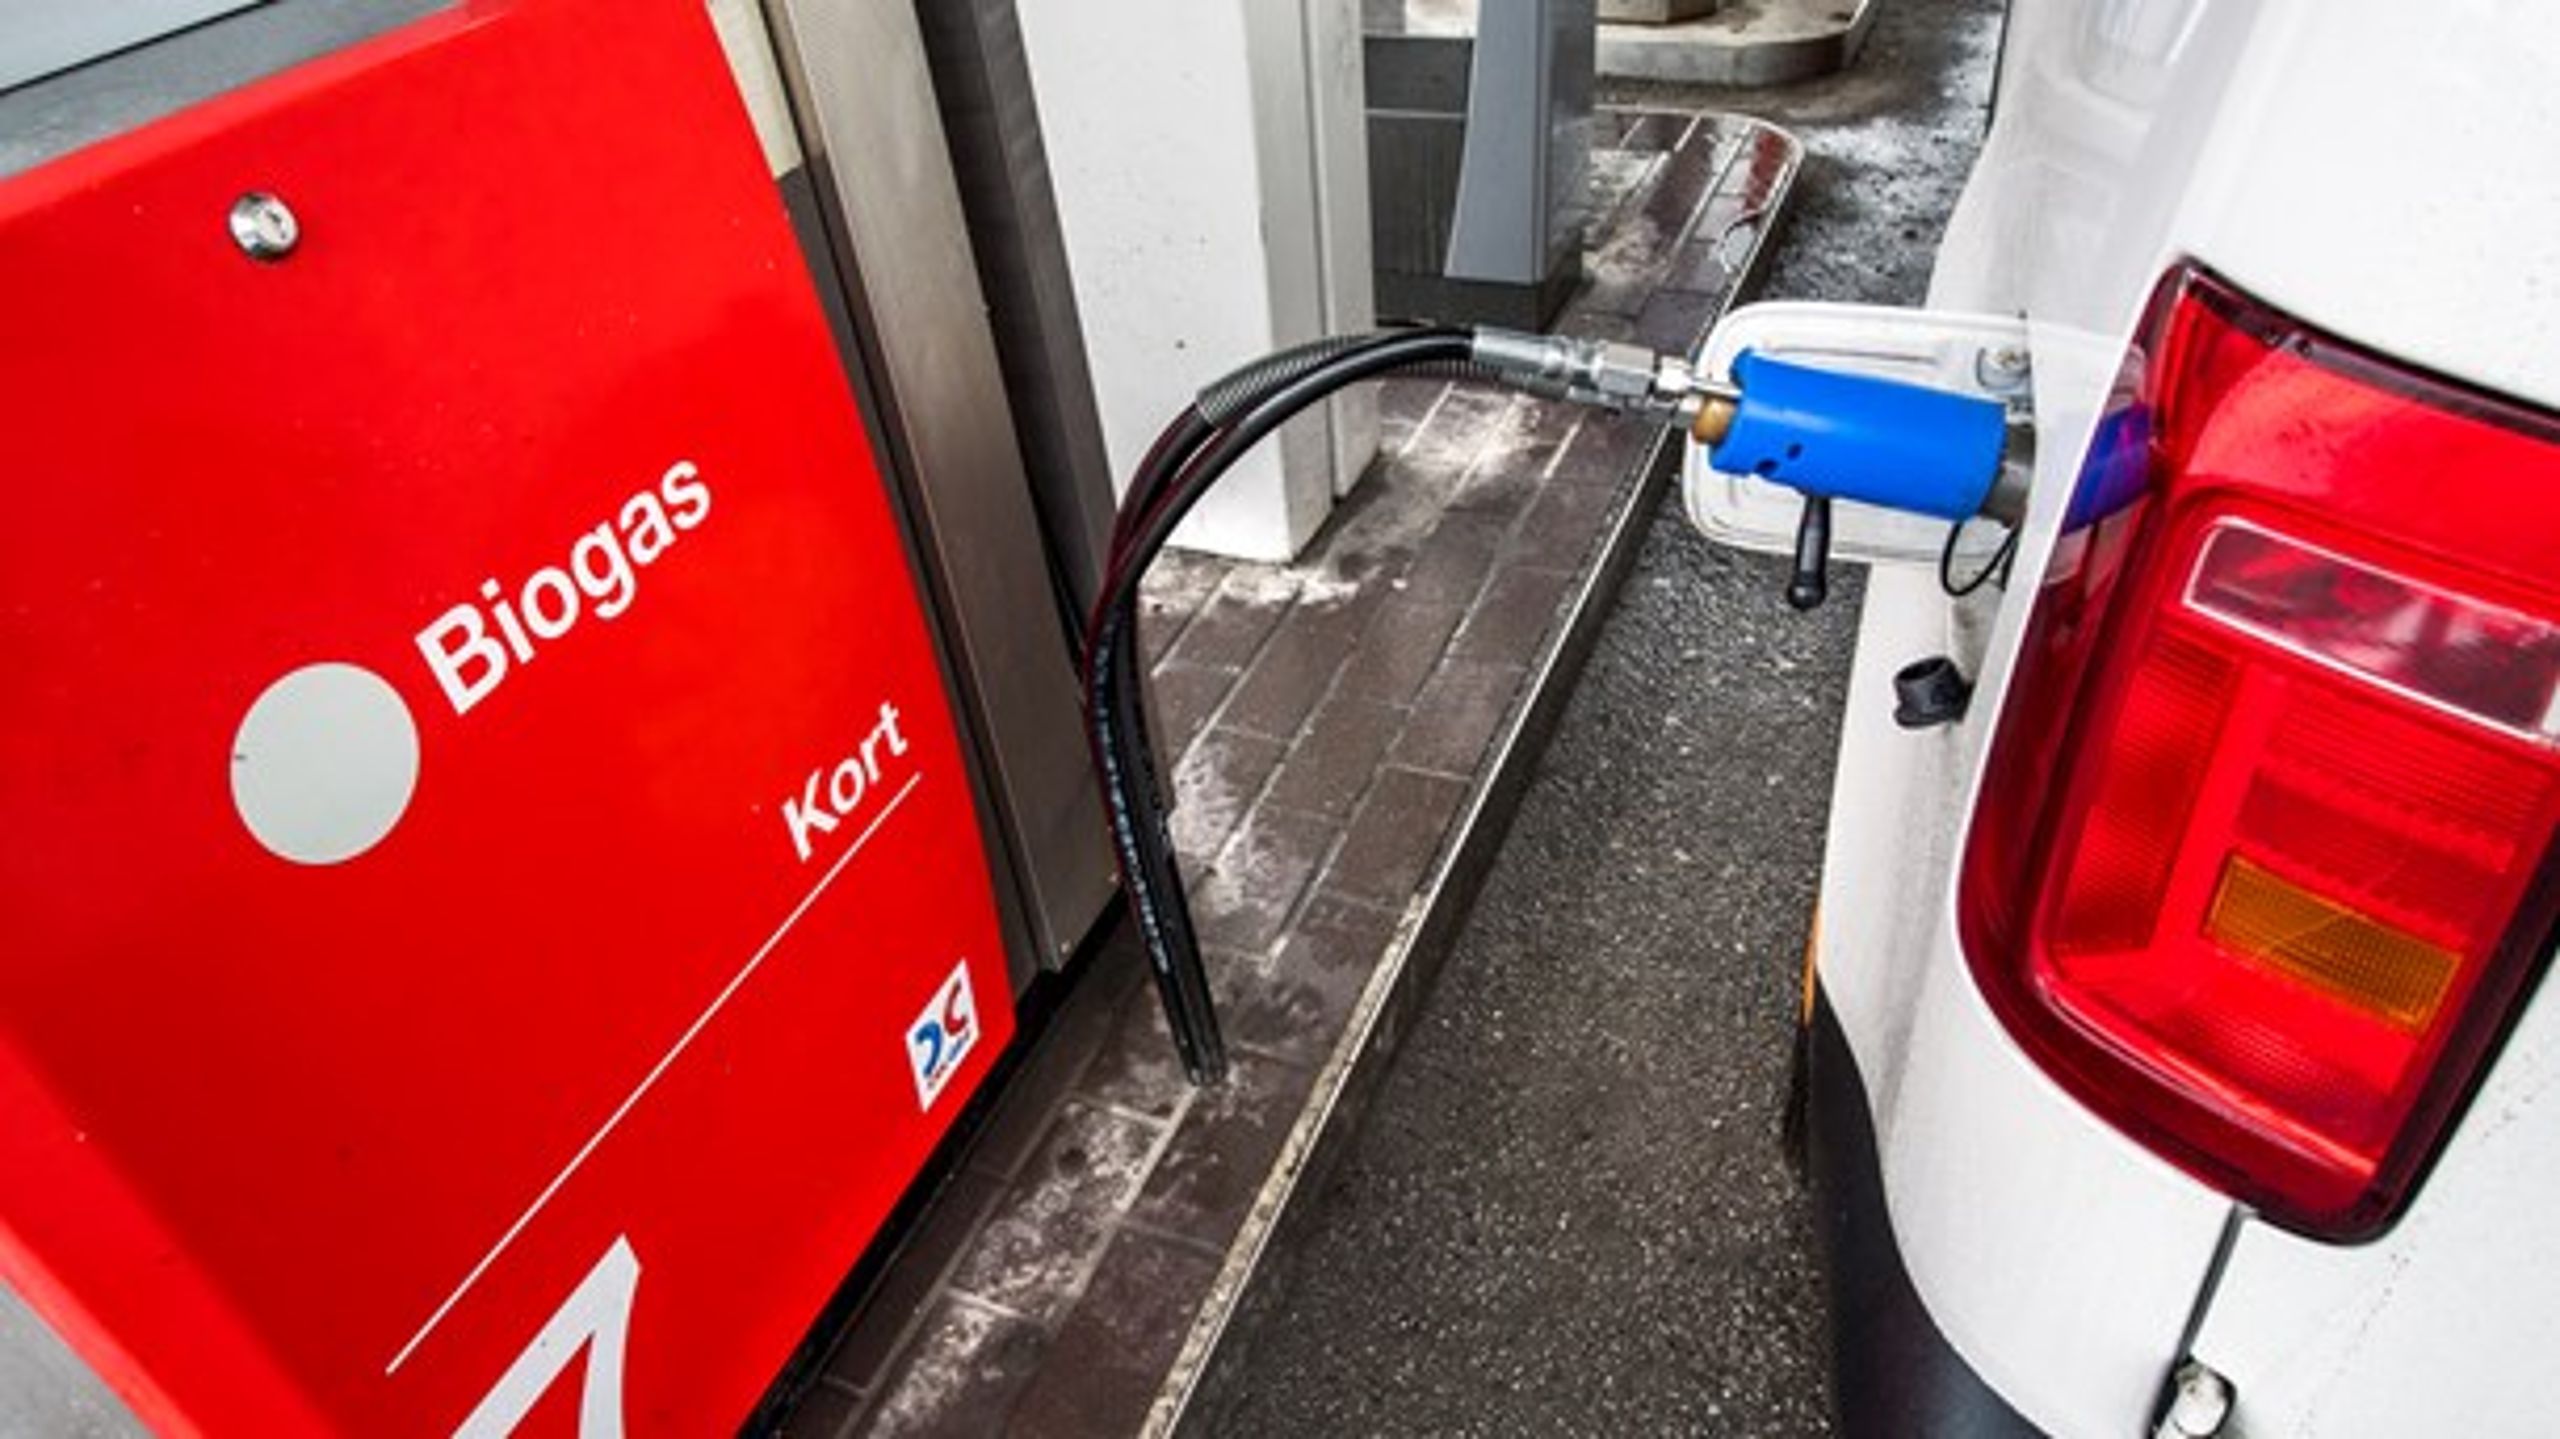 "Framgången med biogas för personbilar borde vara något gasbranschen lyfter fram i debatten."